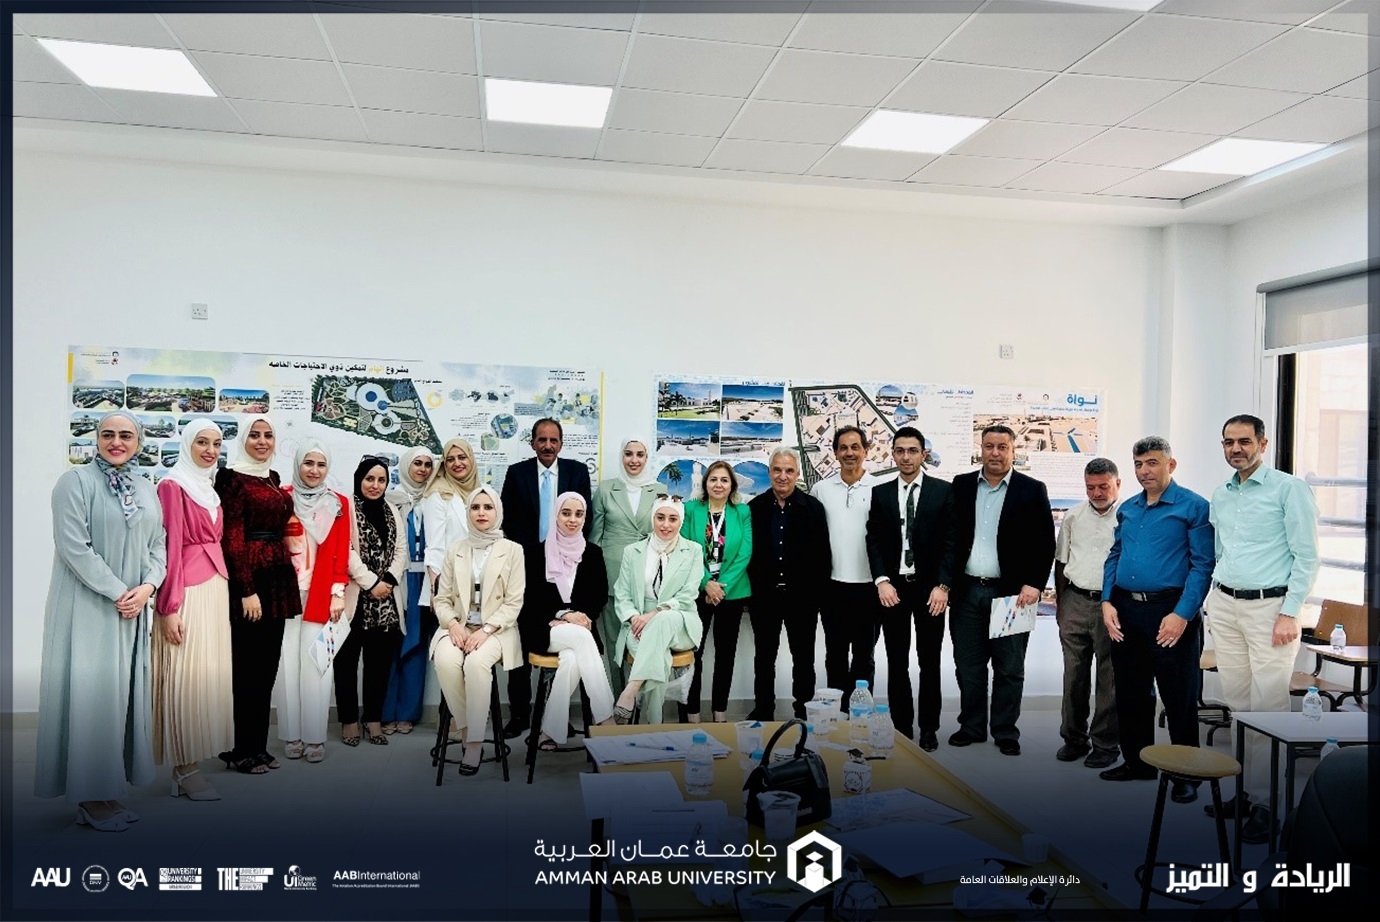 مشاريع تخرج بأفكار ريادية لطلبة هندسة العمارة في "عمان العربية"